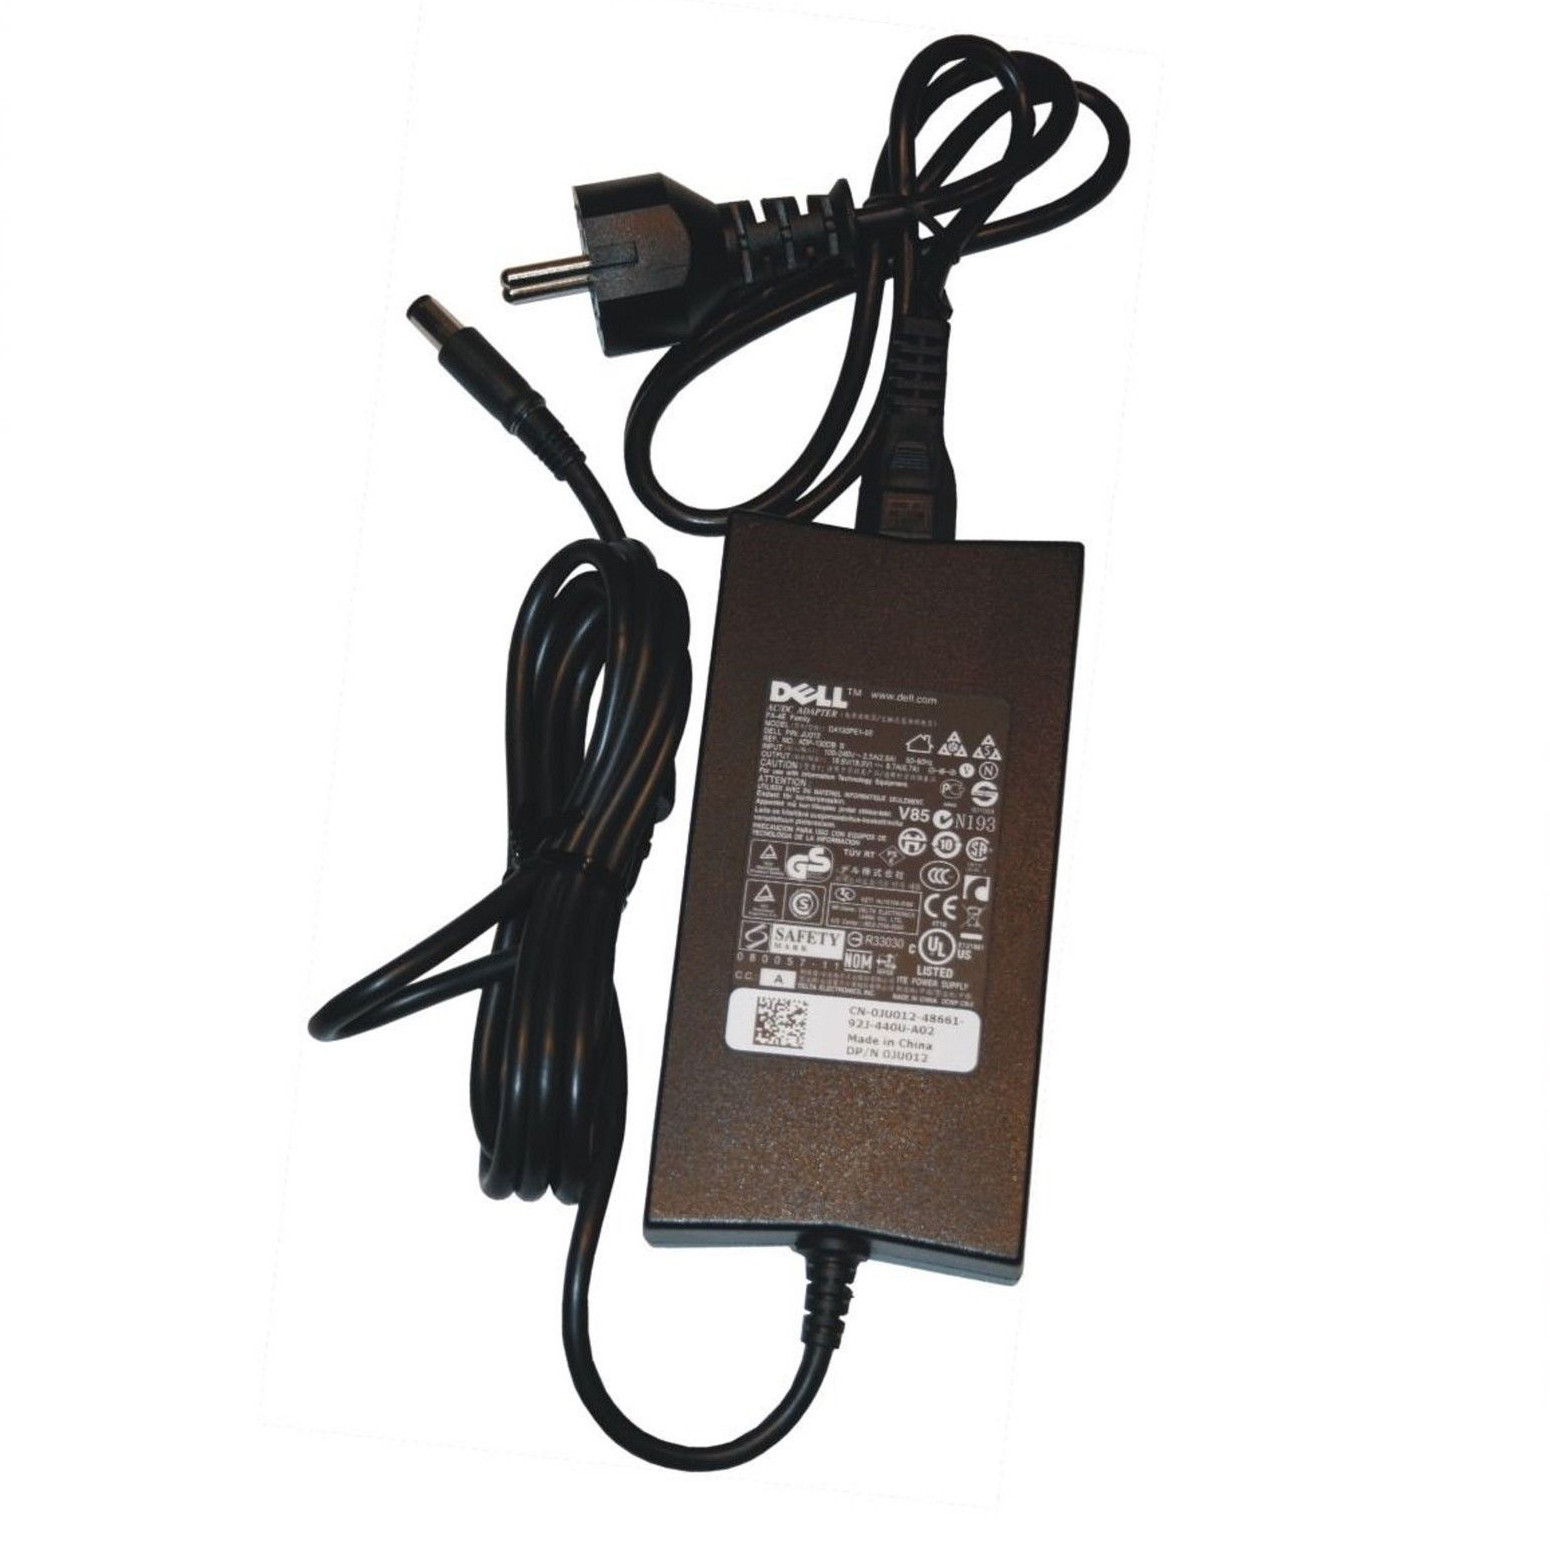 Chargeur ordinateur portable JU012 - Pièce d'origine Dell - batterie  appareil photo